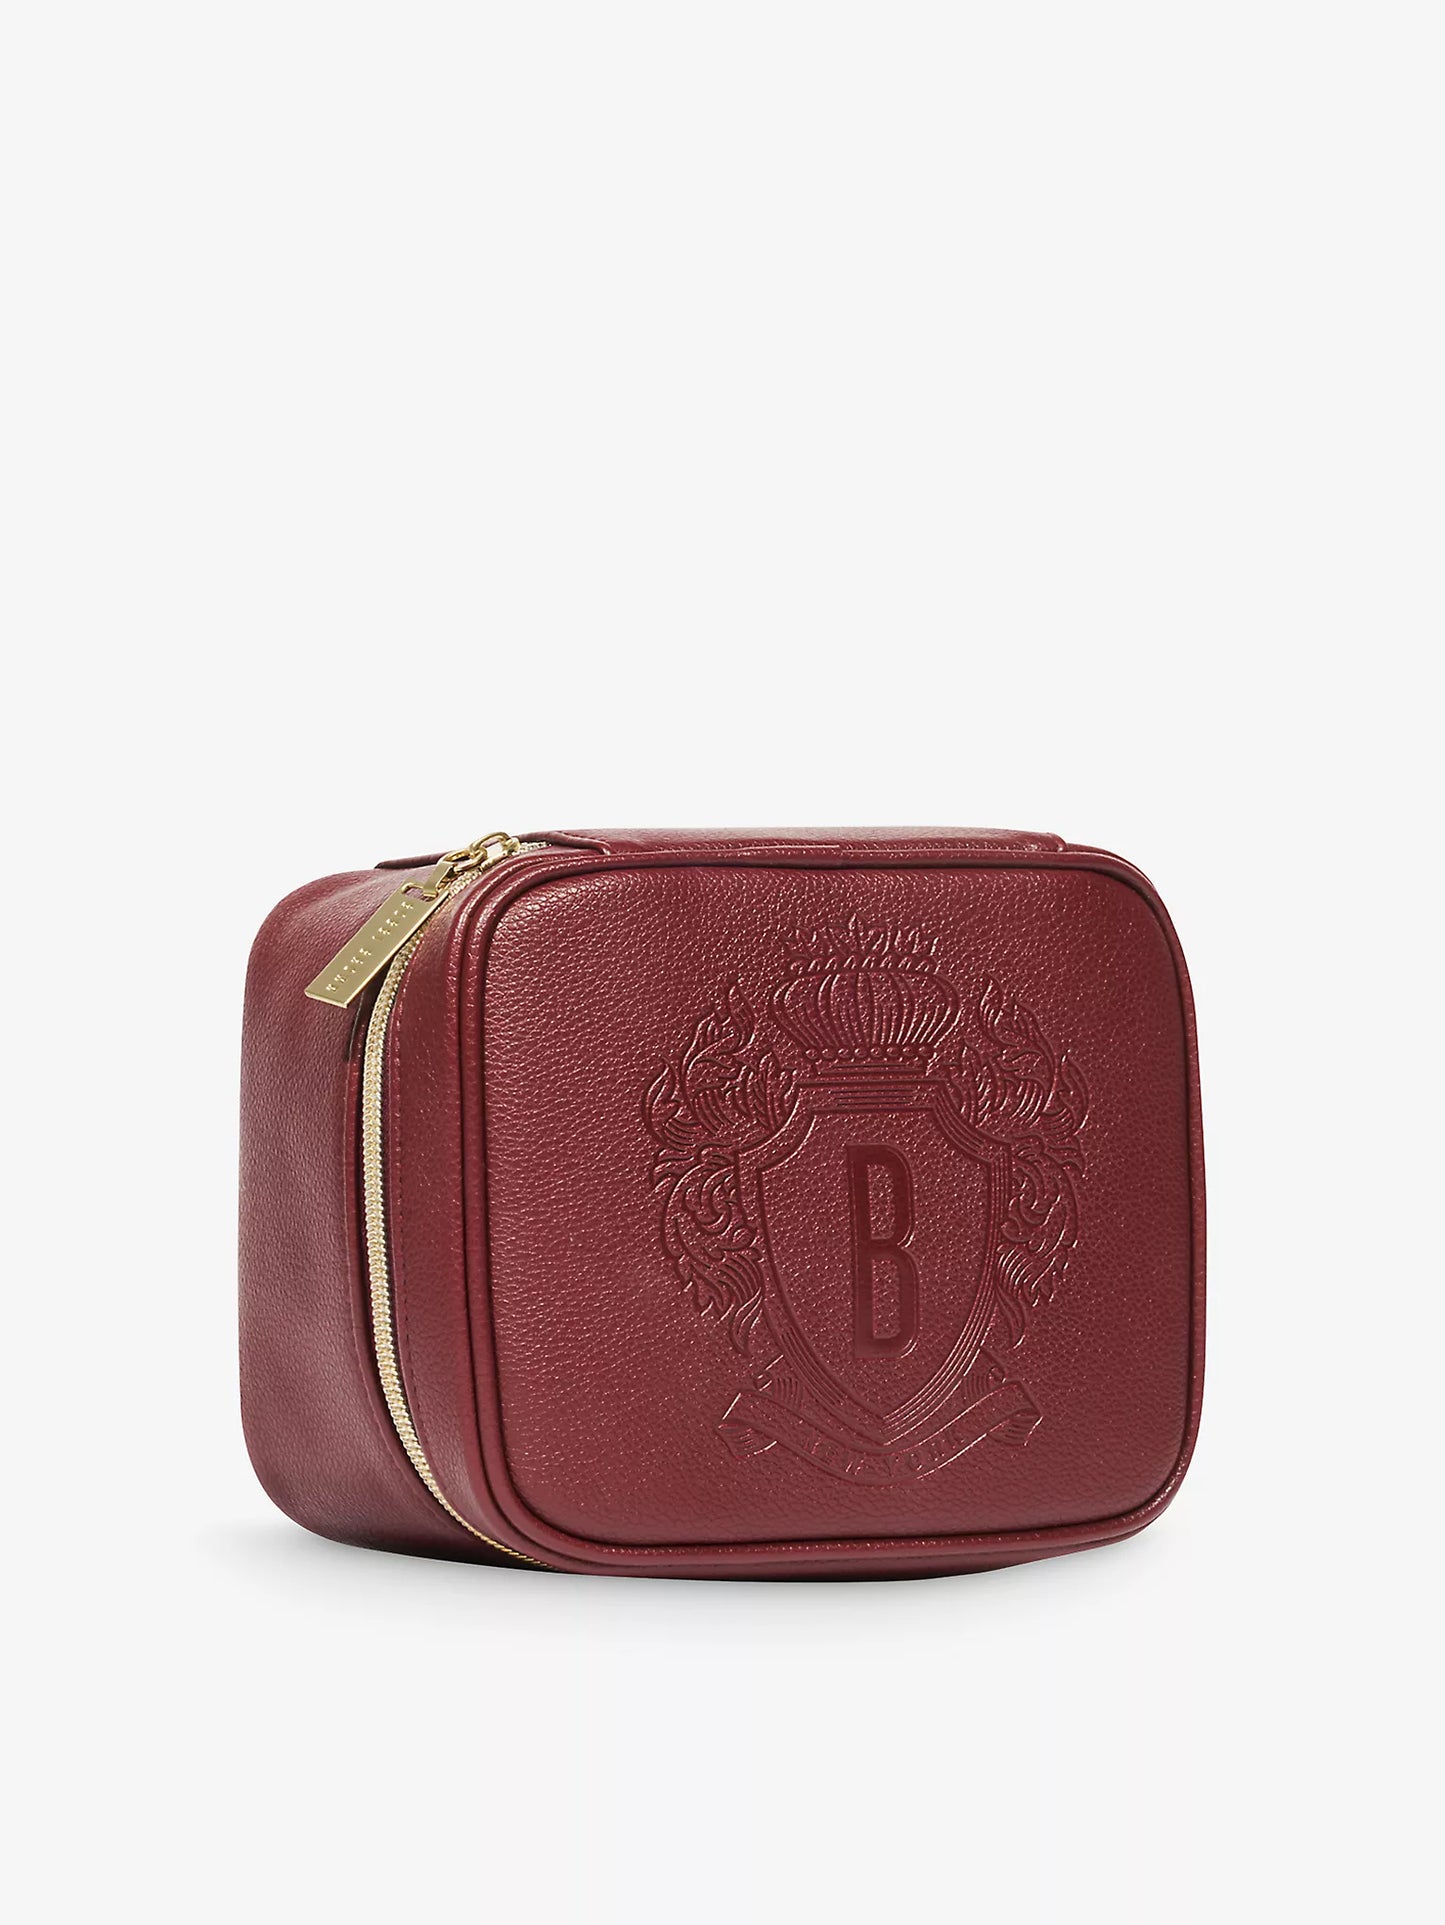 BOBBI BROWN, Signature Glam faux-leather makeup bag